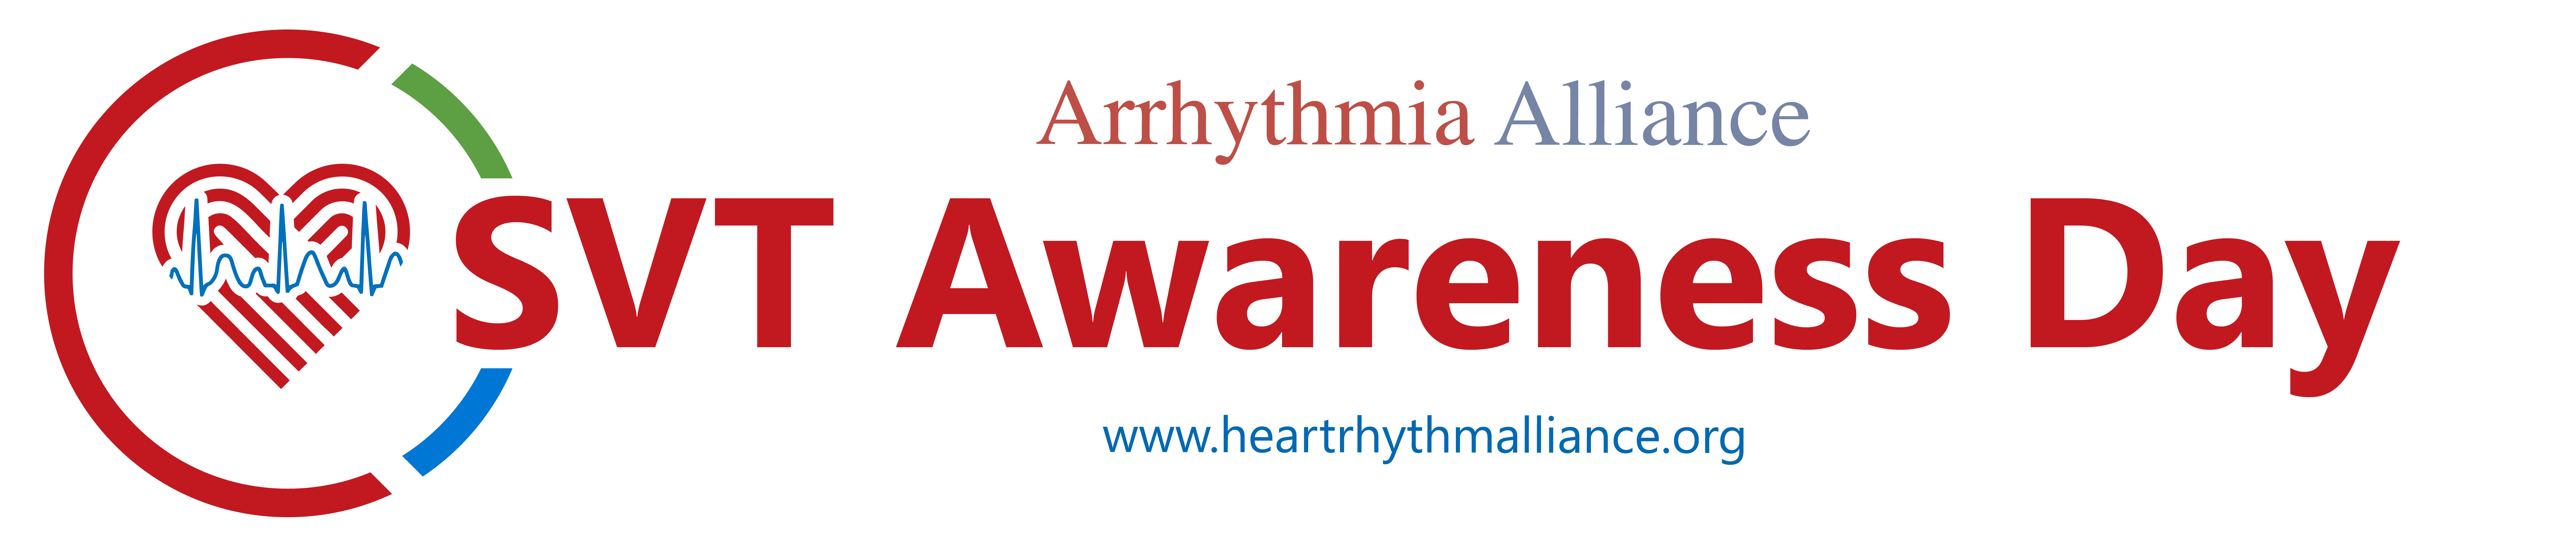 Home Arrhythmia Alliance